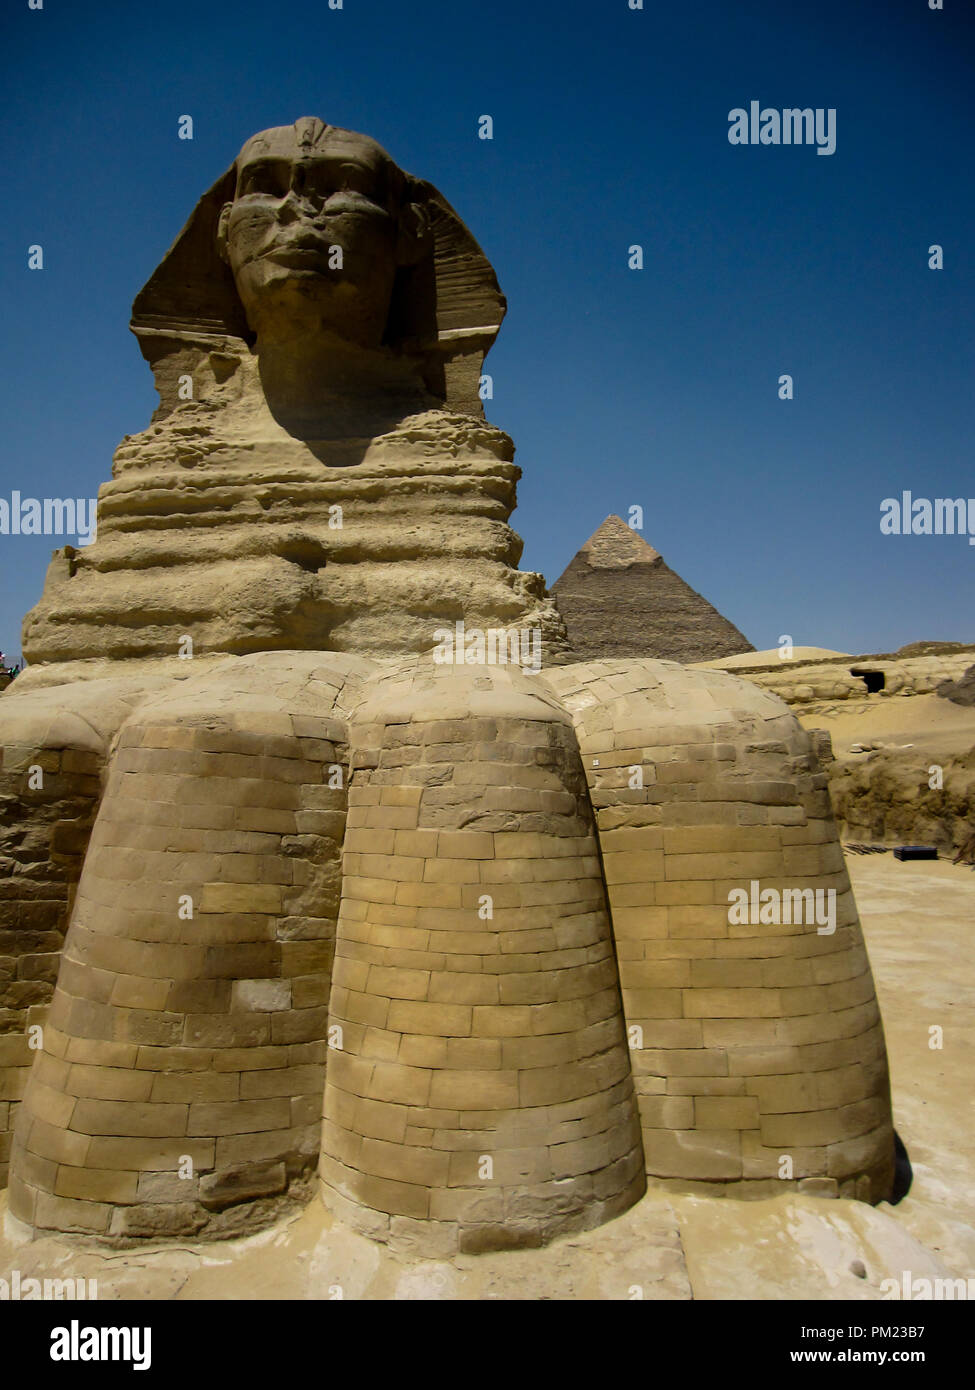 Nahaufnahme Blick auf die Große Sphinx von Gizeh, Ägypten in einem begrenzten Bereich. Dies ist ein wichtiges touristisches Ziel und wichtige archäologische Stätte. Stockfoto